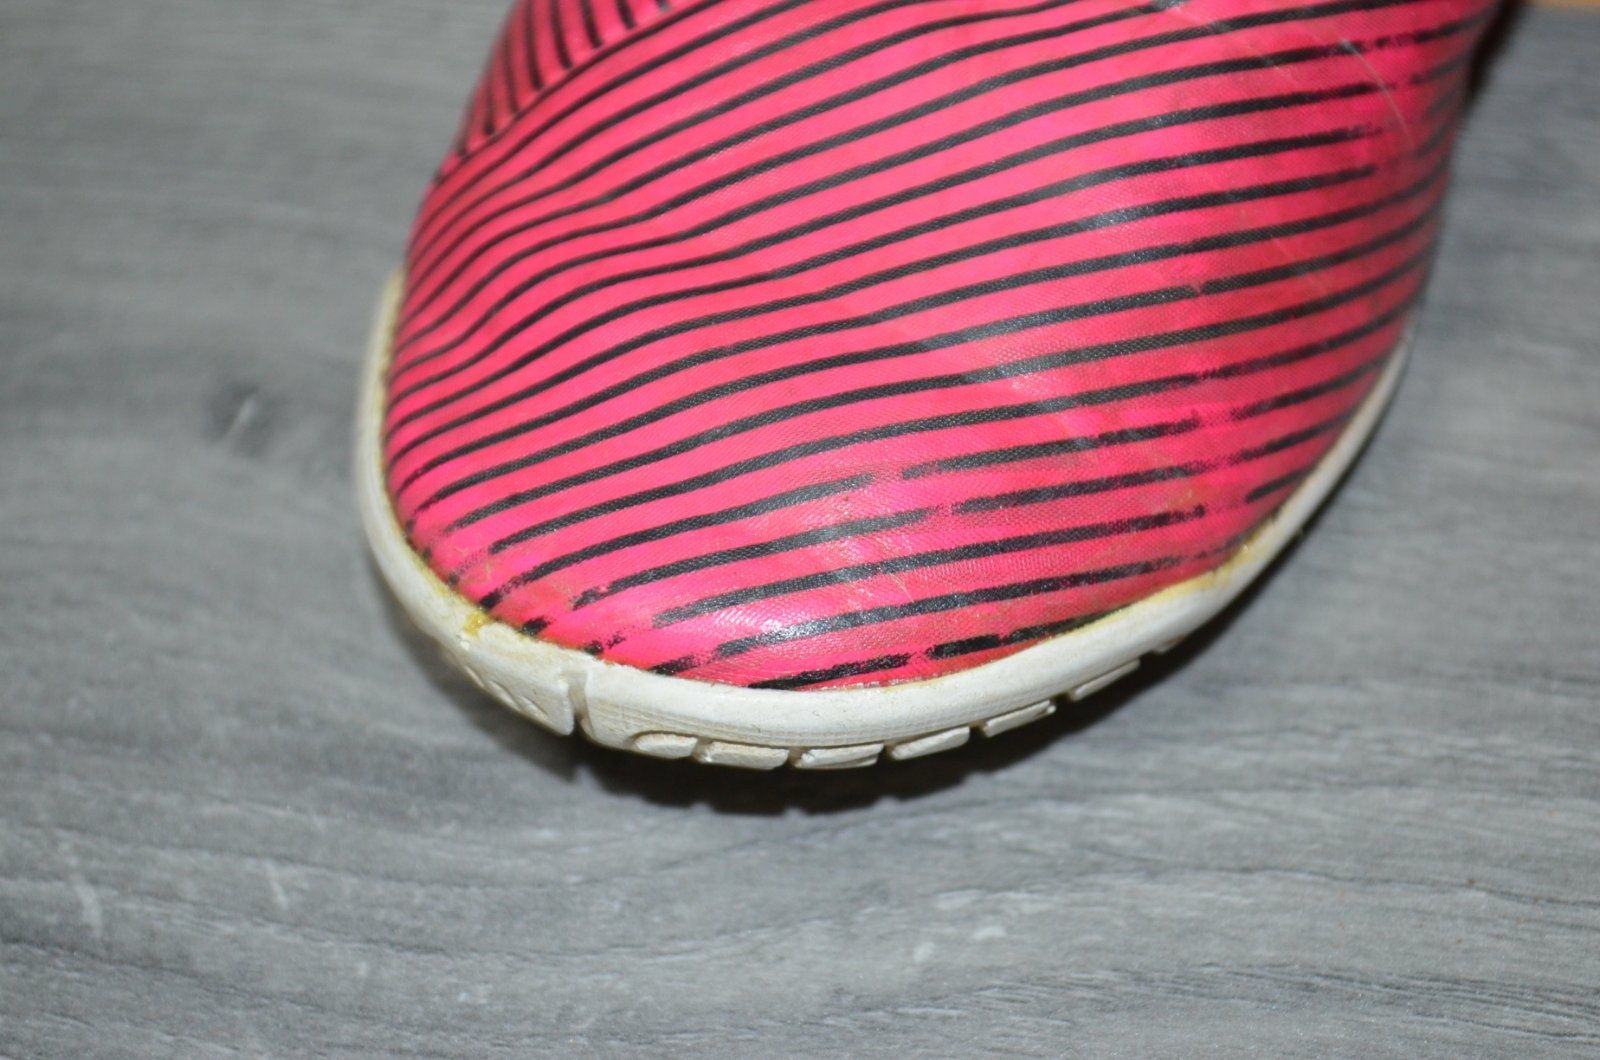 Детские кеды футзалки розовые Adidas Nemeziz по стельке 22,5 см